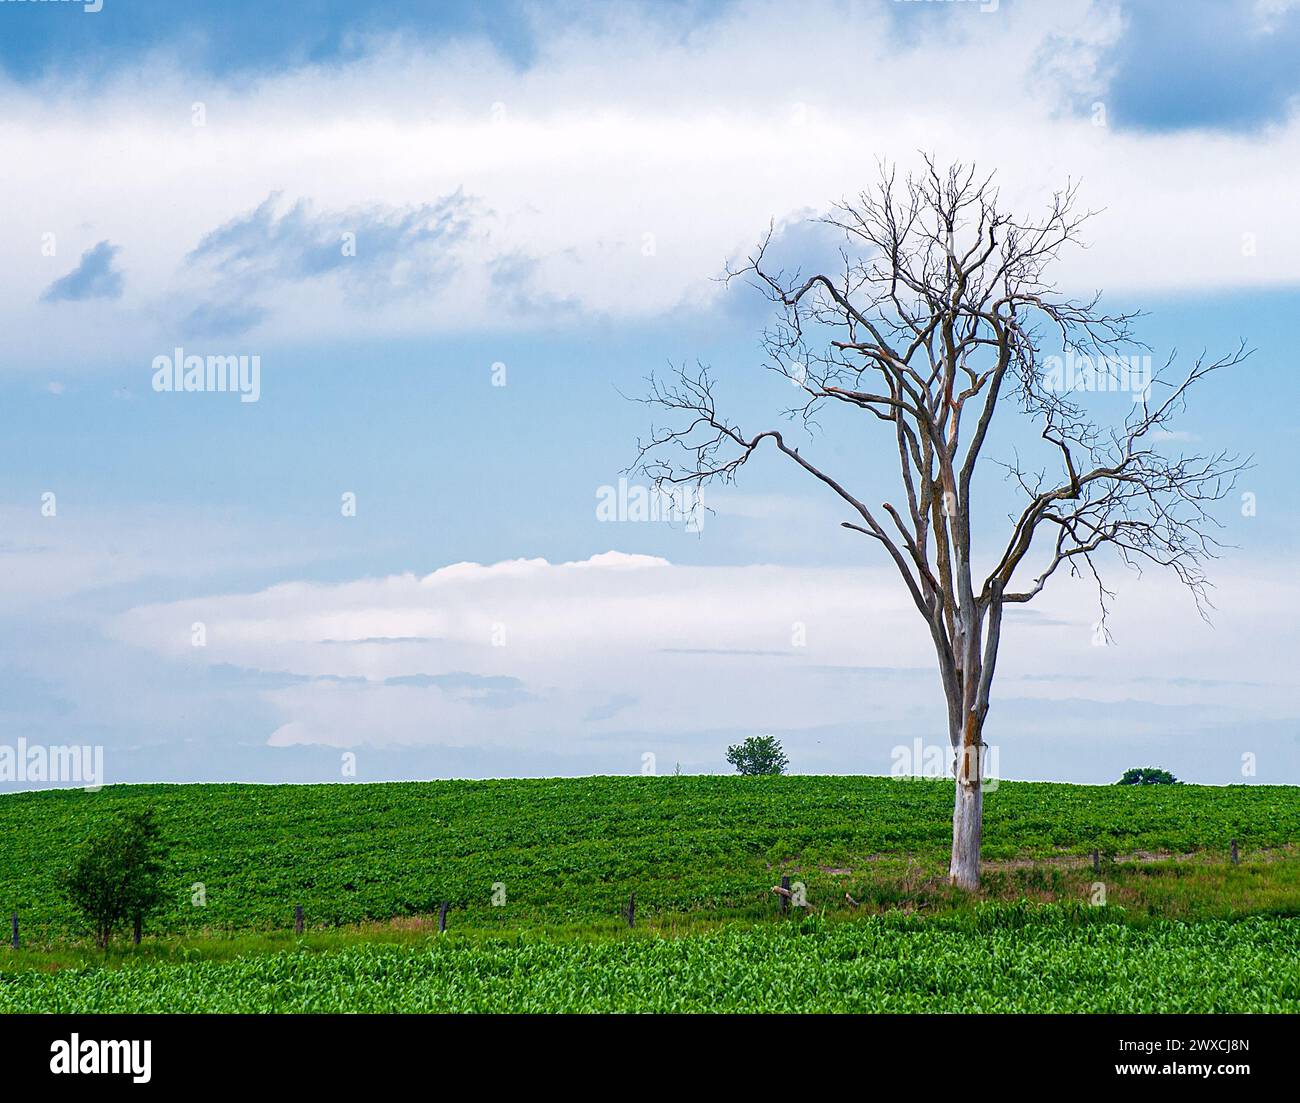 Leafless maple tree in corn field Stock Photo